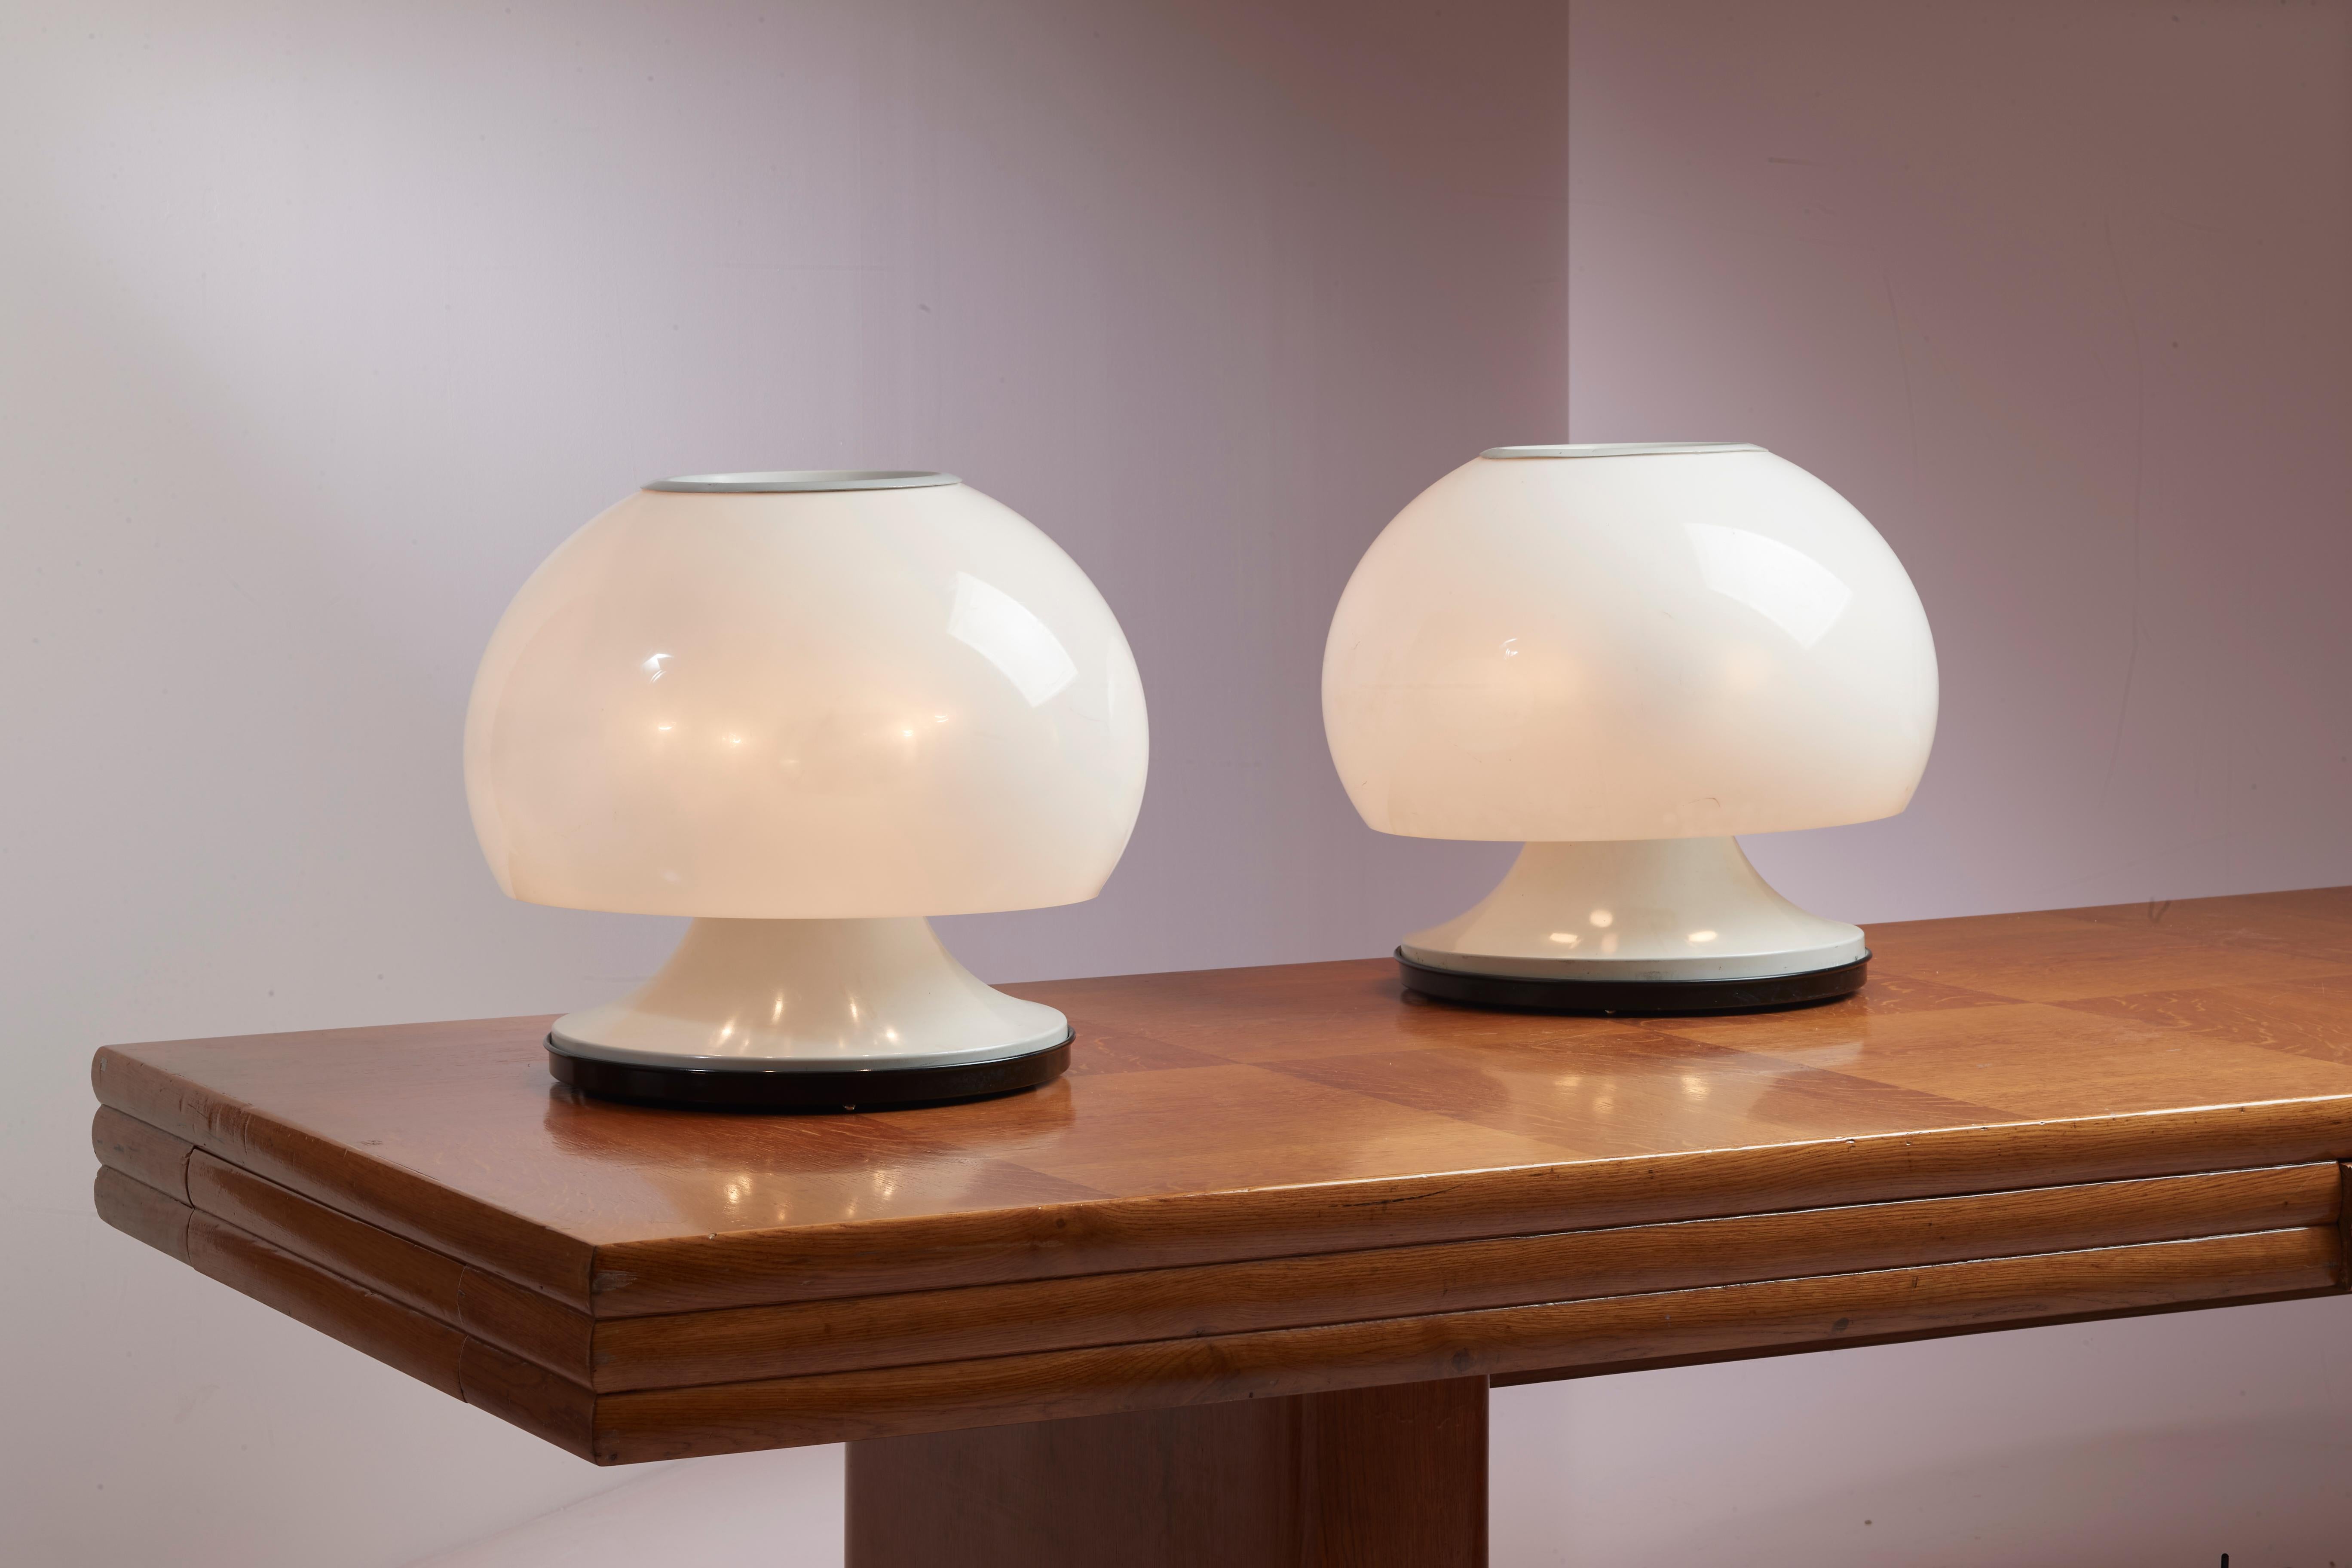 Une paire de grandes lampes de table, Design/One des années 1960, habilement fabriquées en perspex et en métal par Arteluce, avec un design de Gino Sarfatti.

Ces lampes italiennes, à la fois décoratives et saisissantes, mettent en évidence la